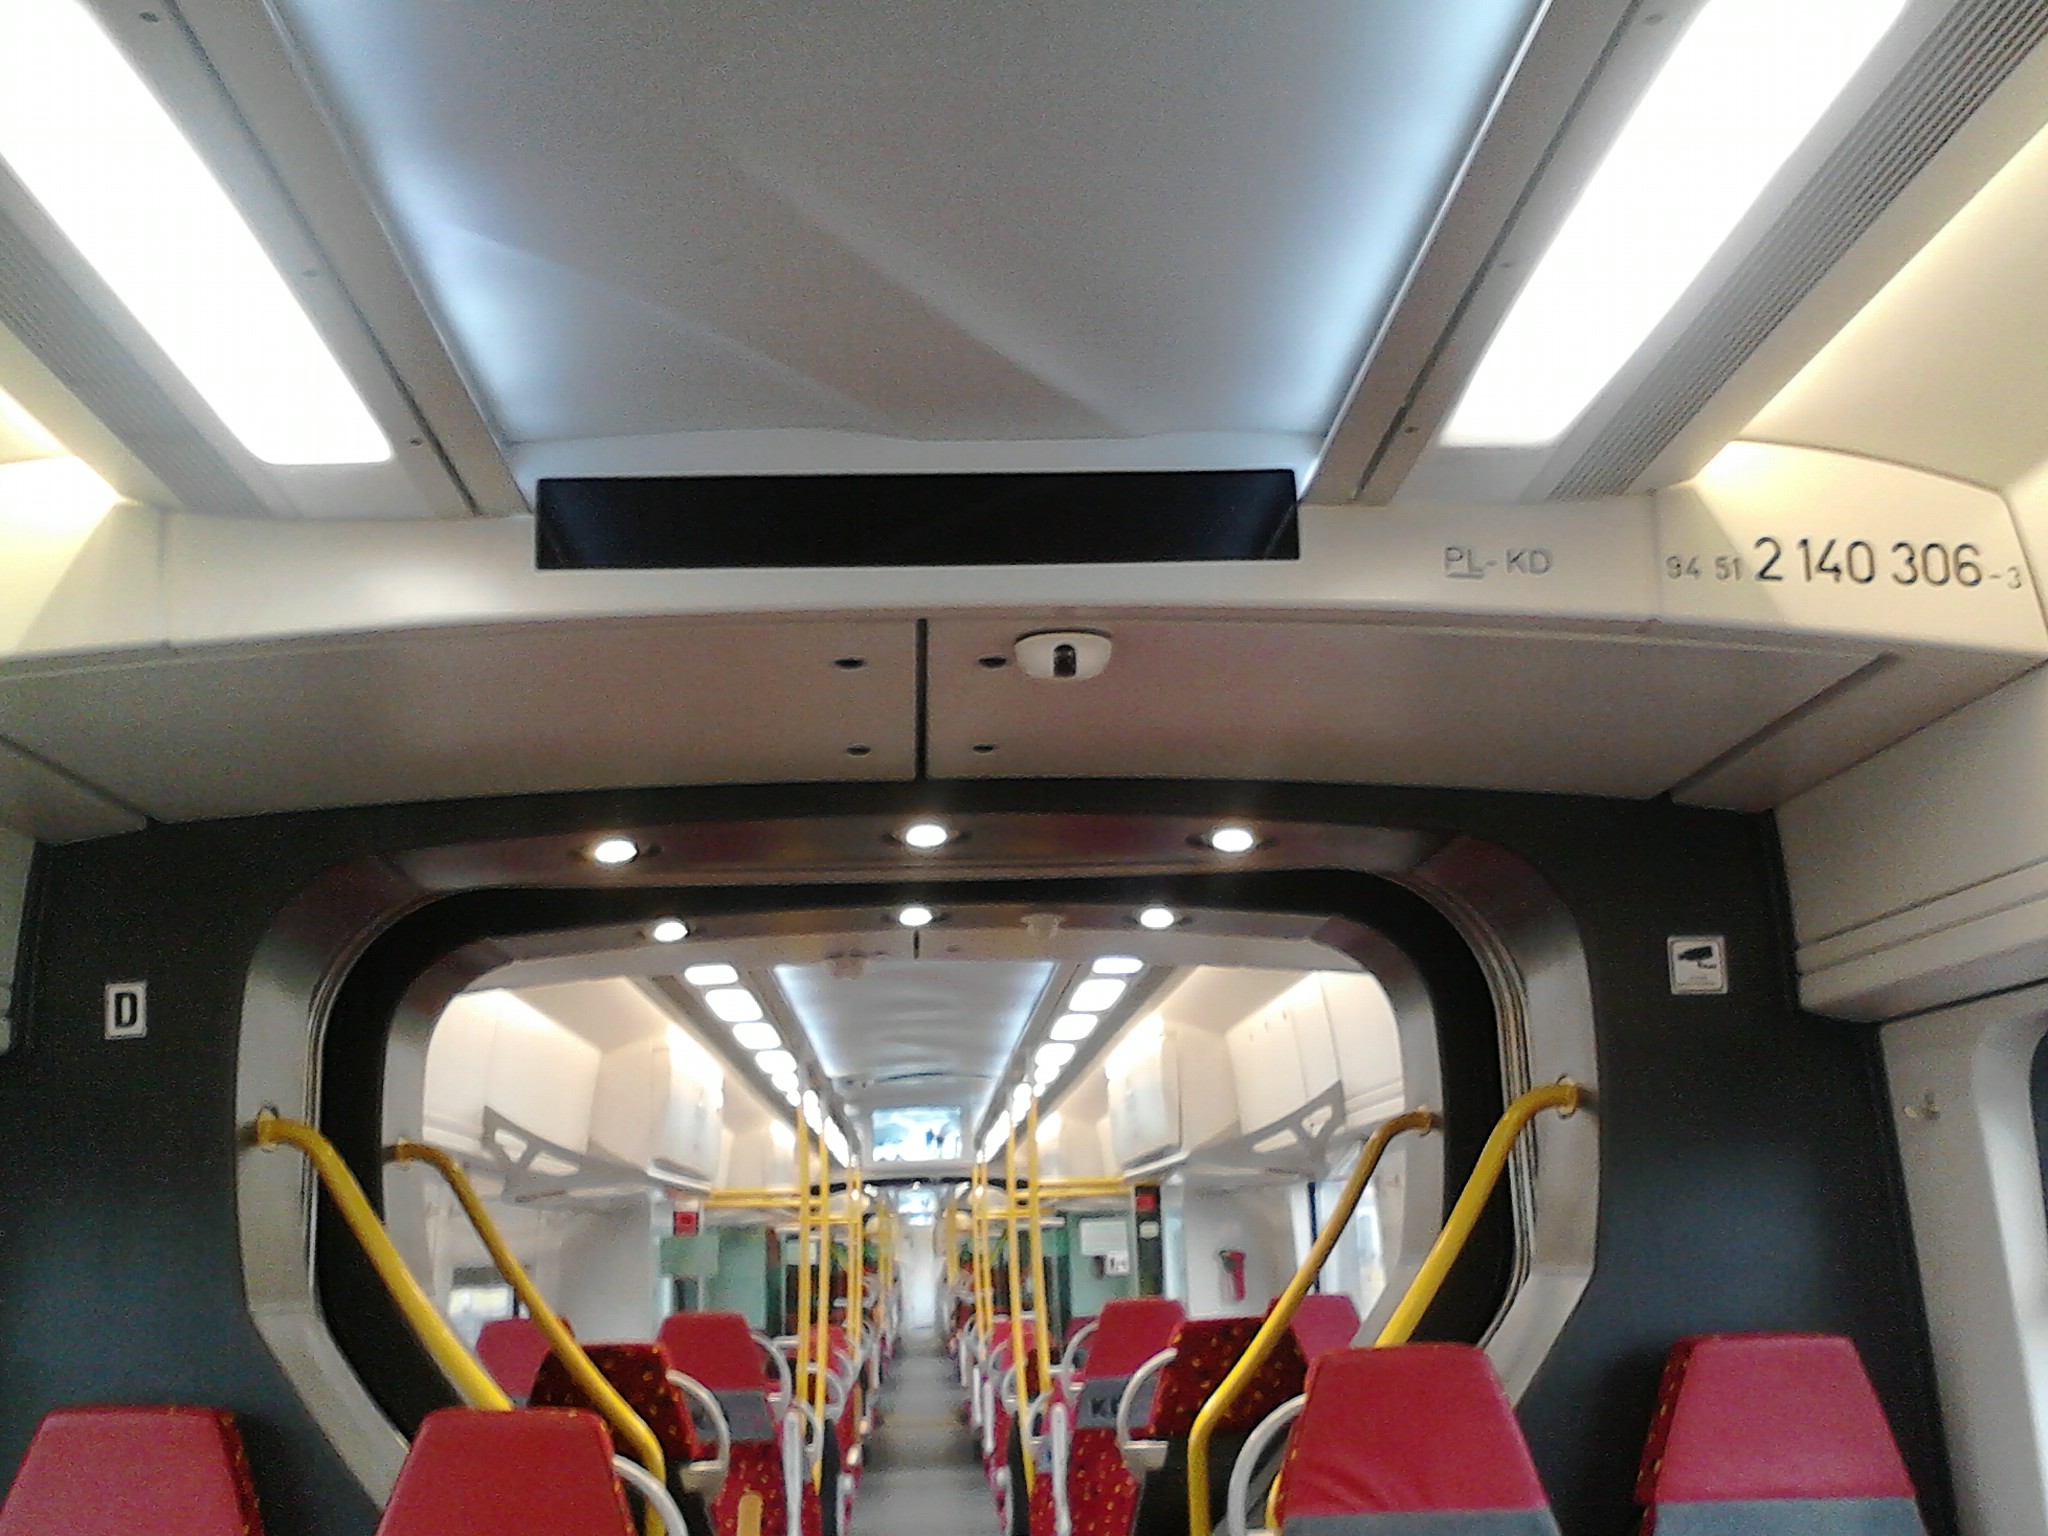 wnętrze pociągu w członach niedostosowanych do o. na wózkach